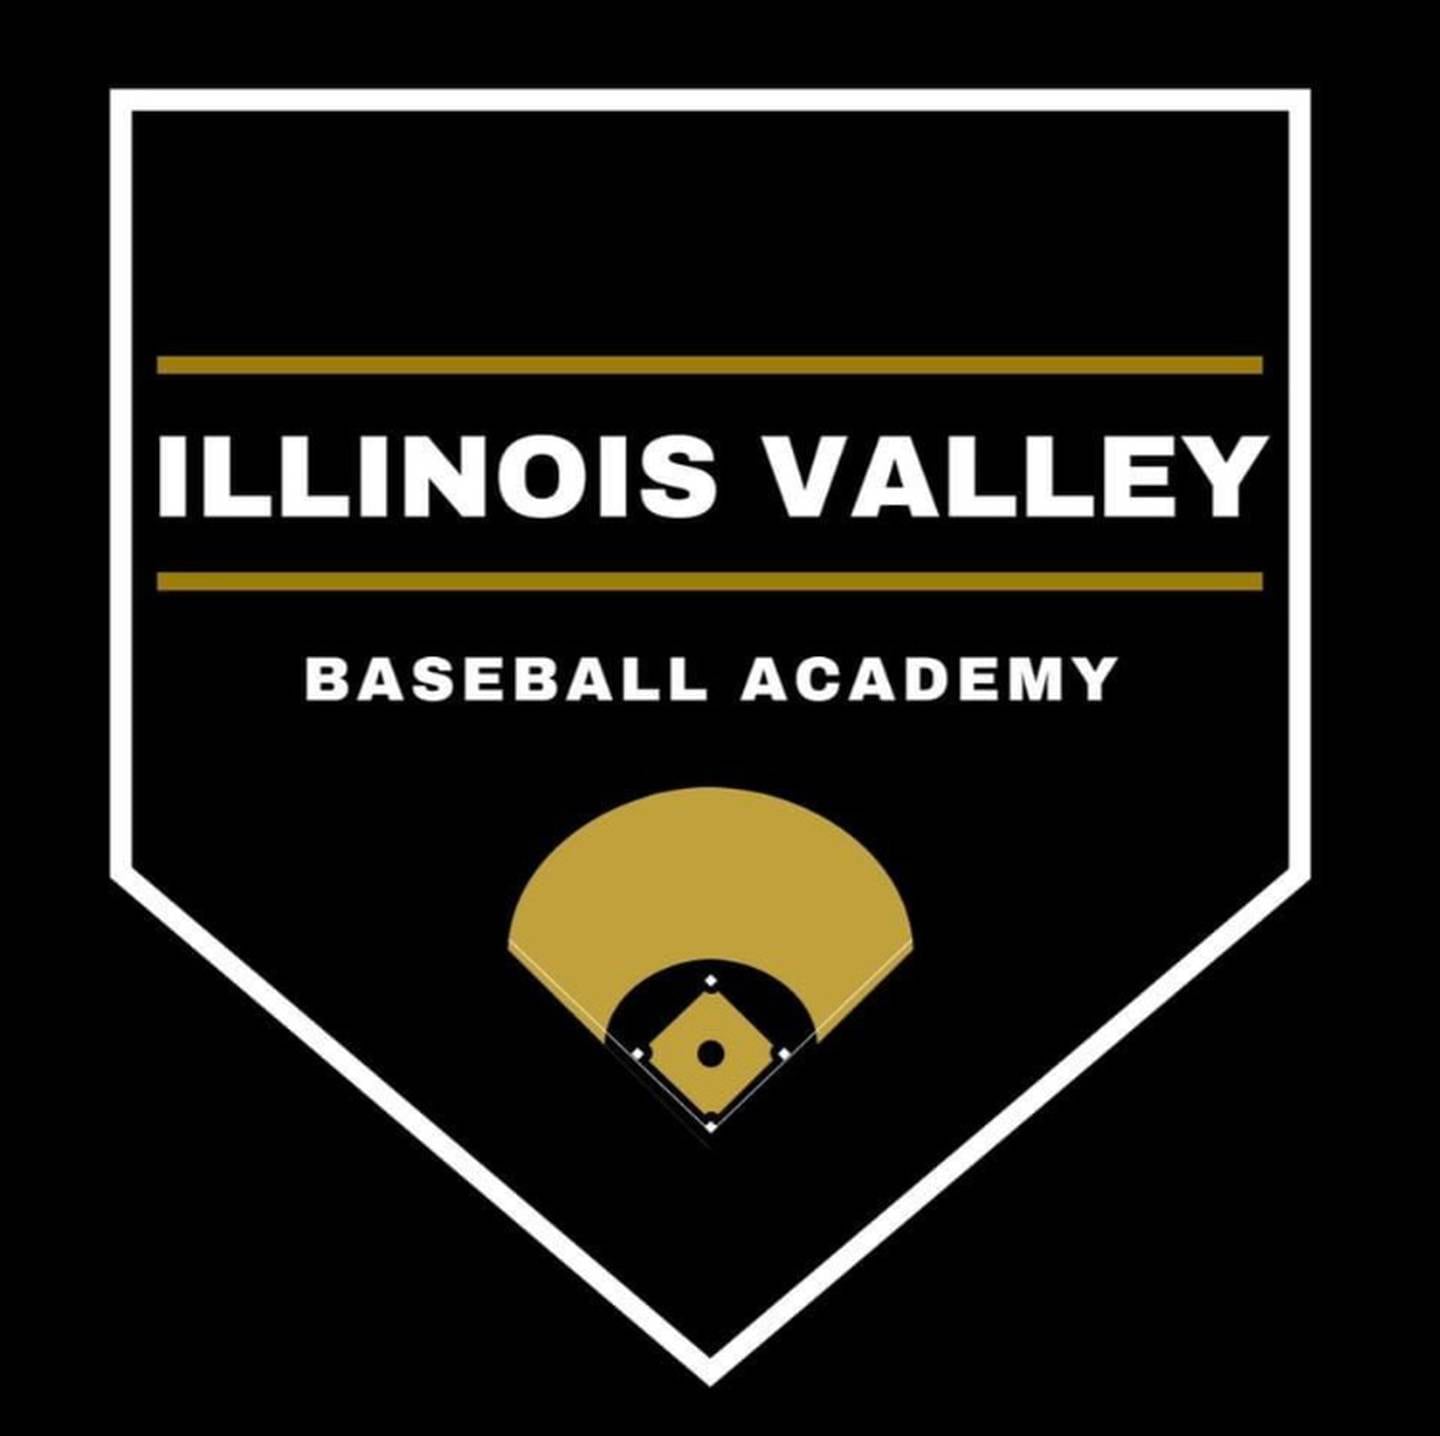 Illinois Valley Baseball Academy